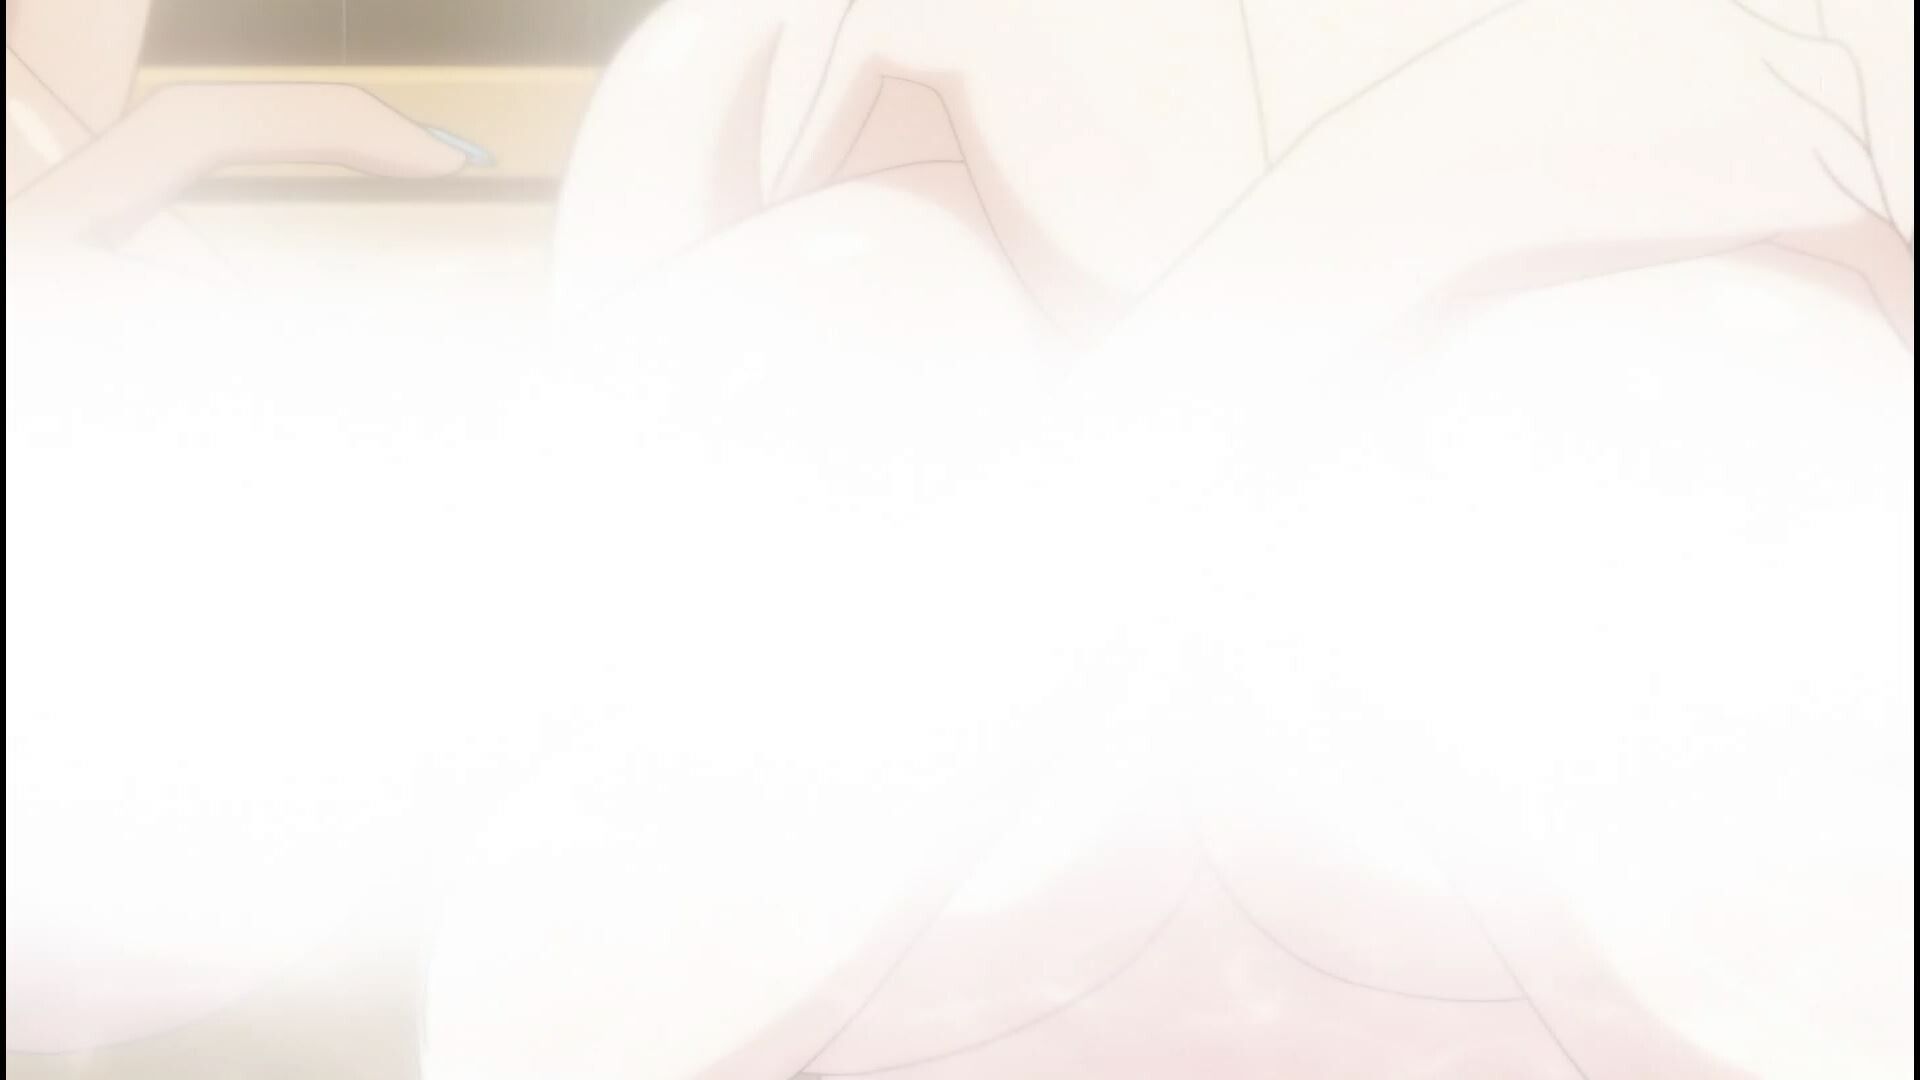 Anime [Kandagawa JETGIRLS] 8 episodes of girls erotic round-view bath bathing scene! 17